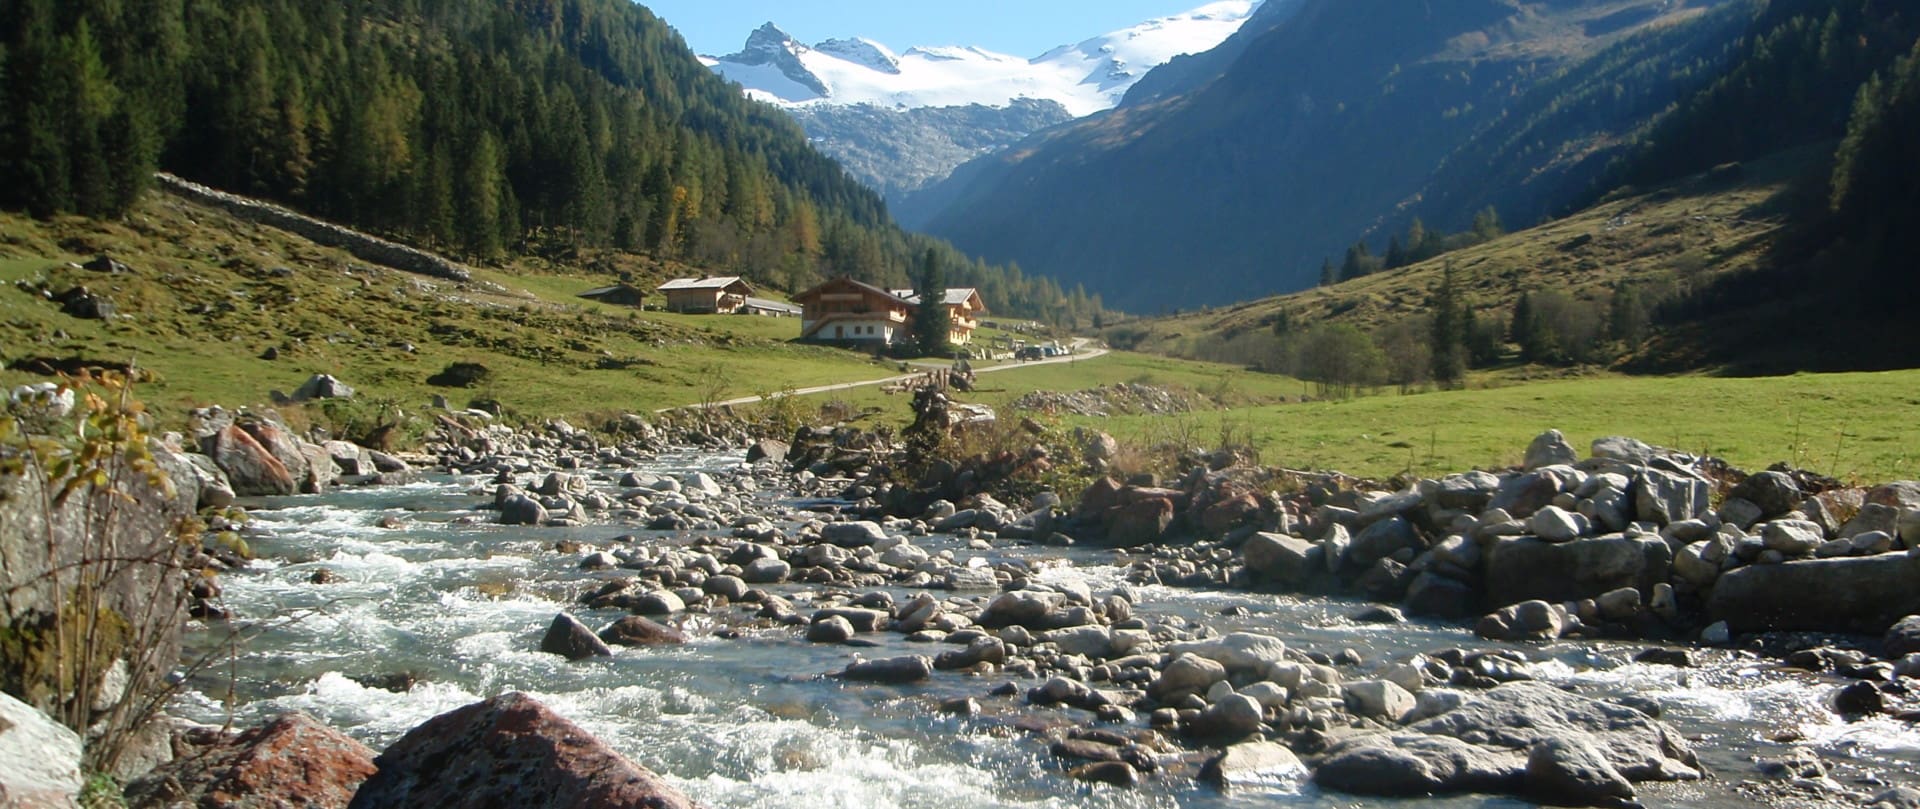 Gebirgsbach vor traditionellen Gasthof mit bergiger Landschaft im Hintergrund